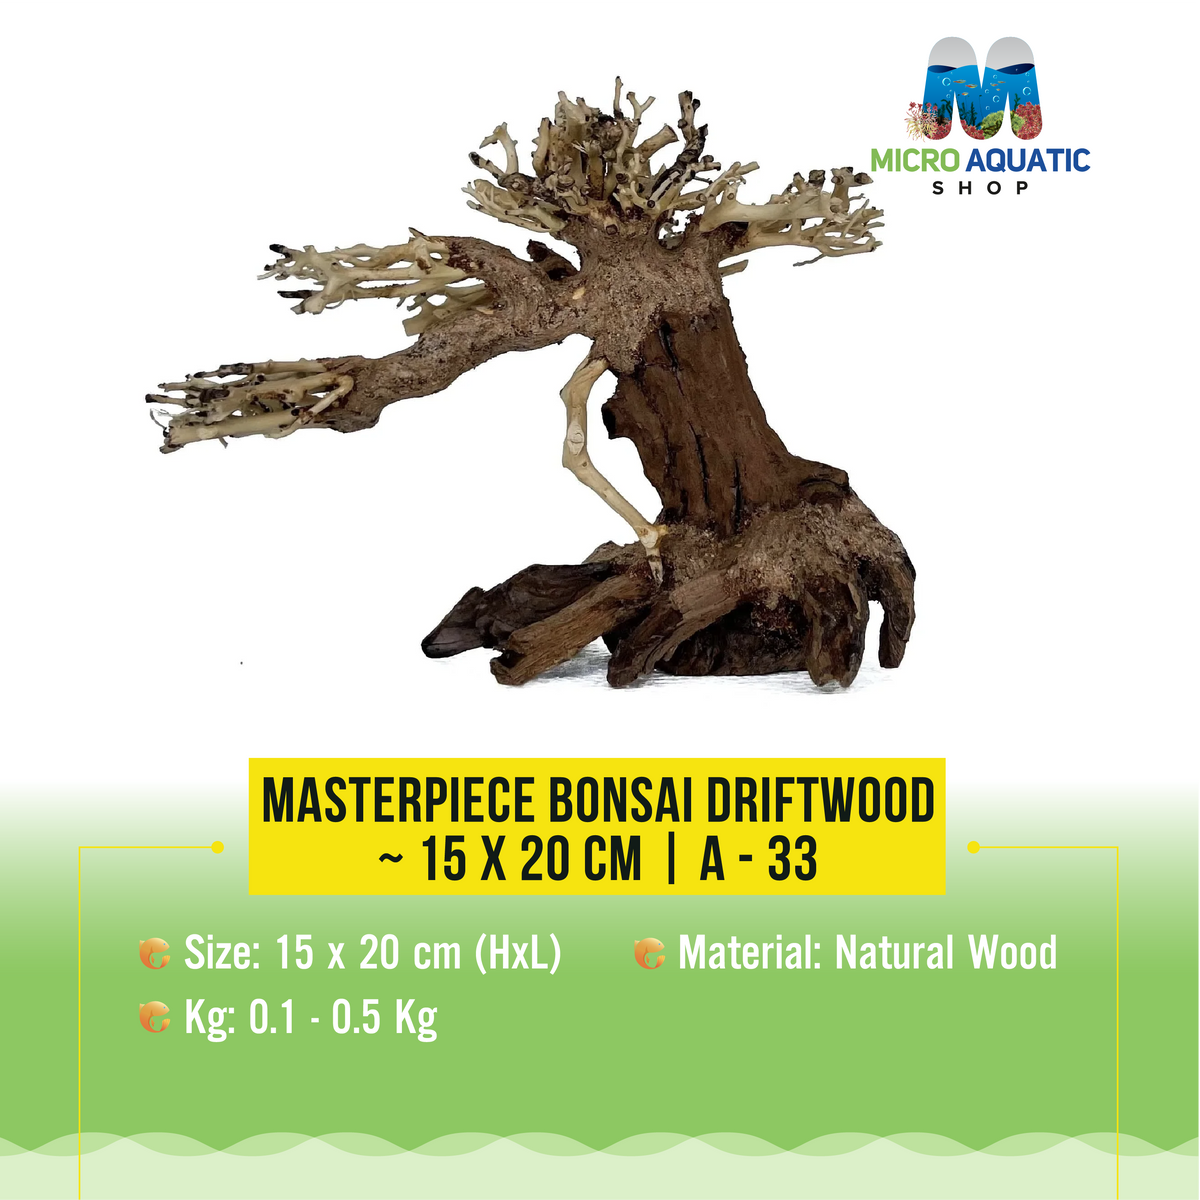 Masterpiece Bonsai Driftwood ~ 15 x 20 cm | A - 33